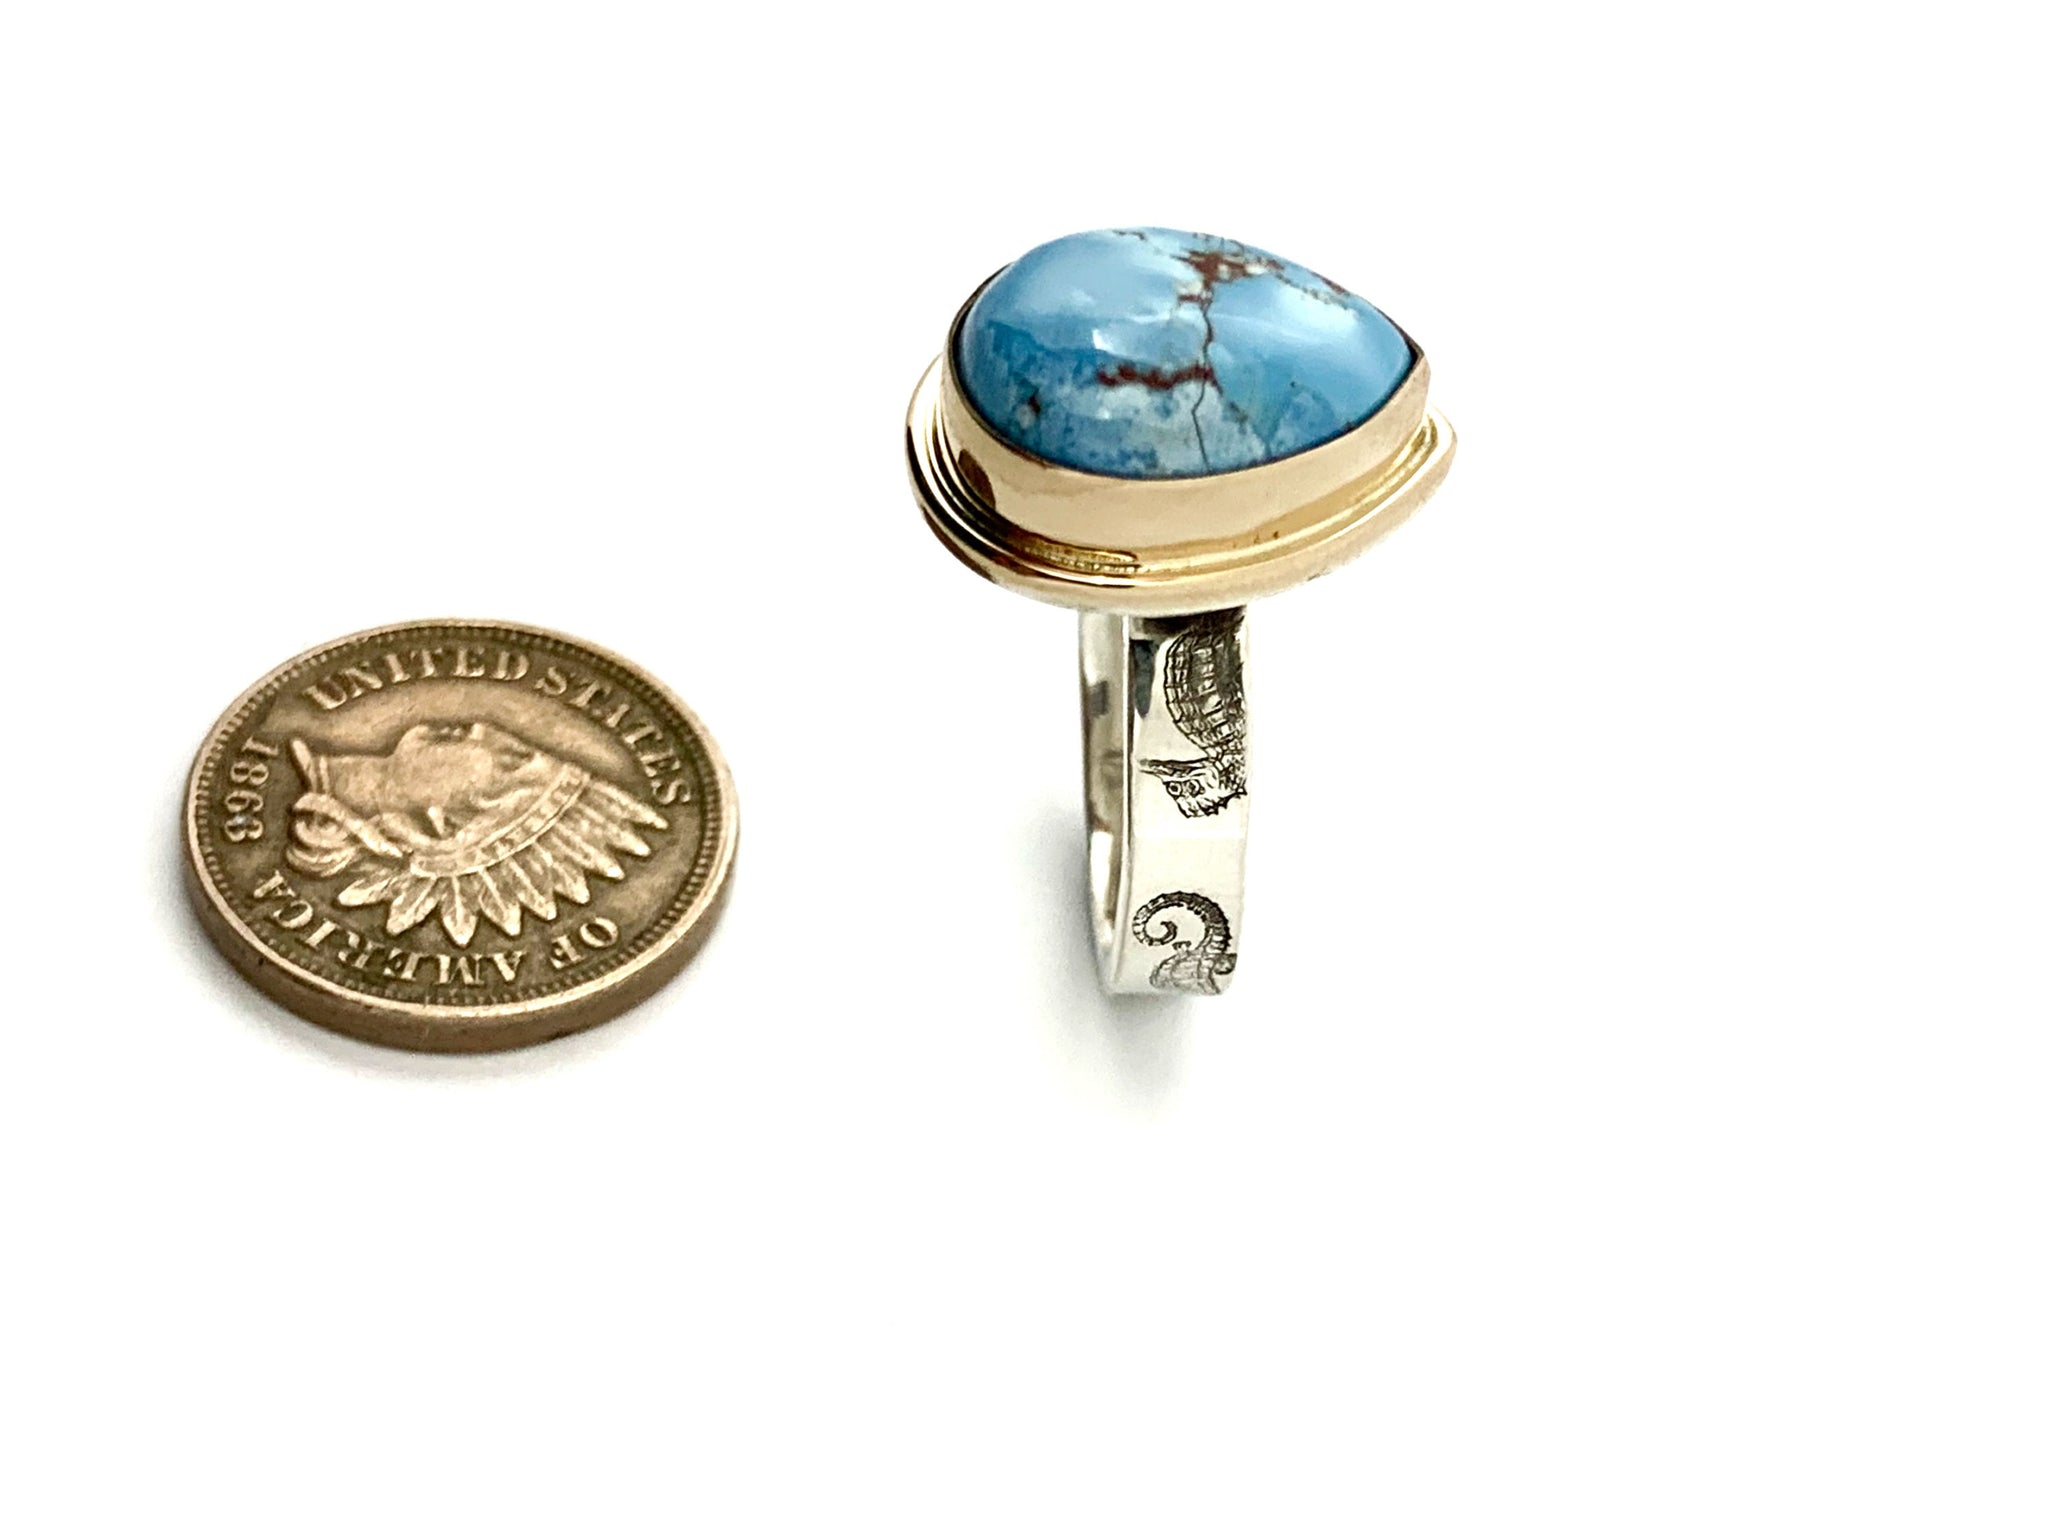 Kazakhstan Turquoise ring, Lavender Turquoise ring, Golden Hills Turquoise Ring, Turquoise Statement Ring, Boho Ring